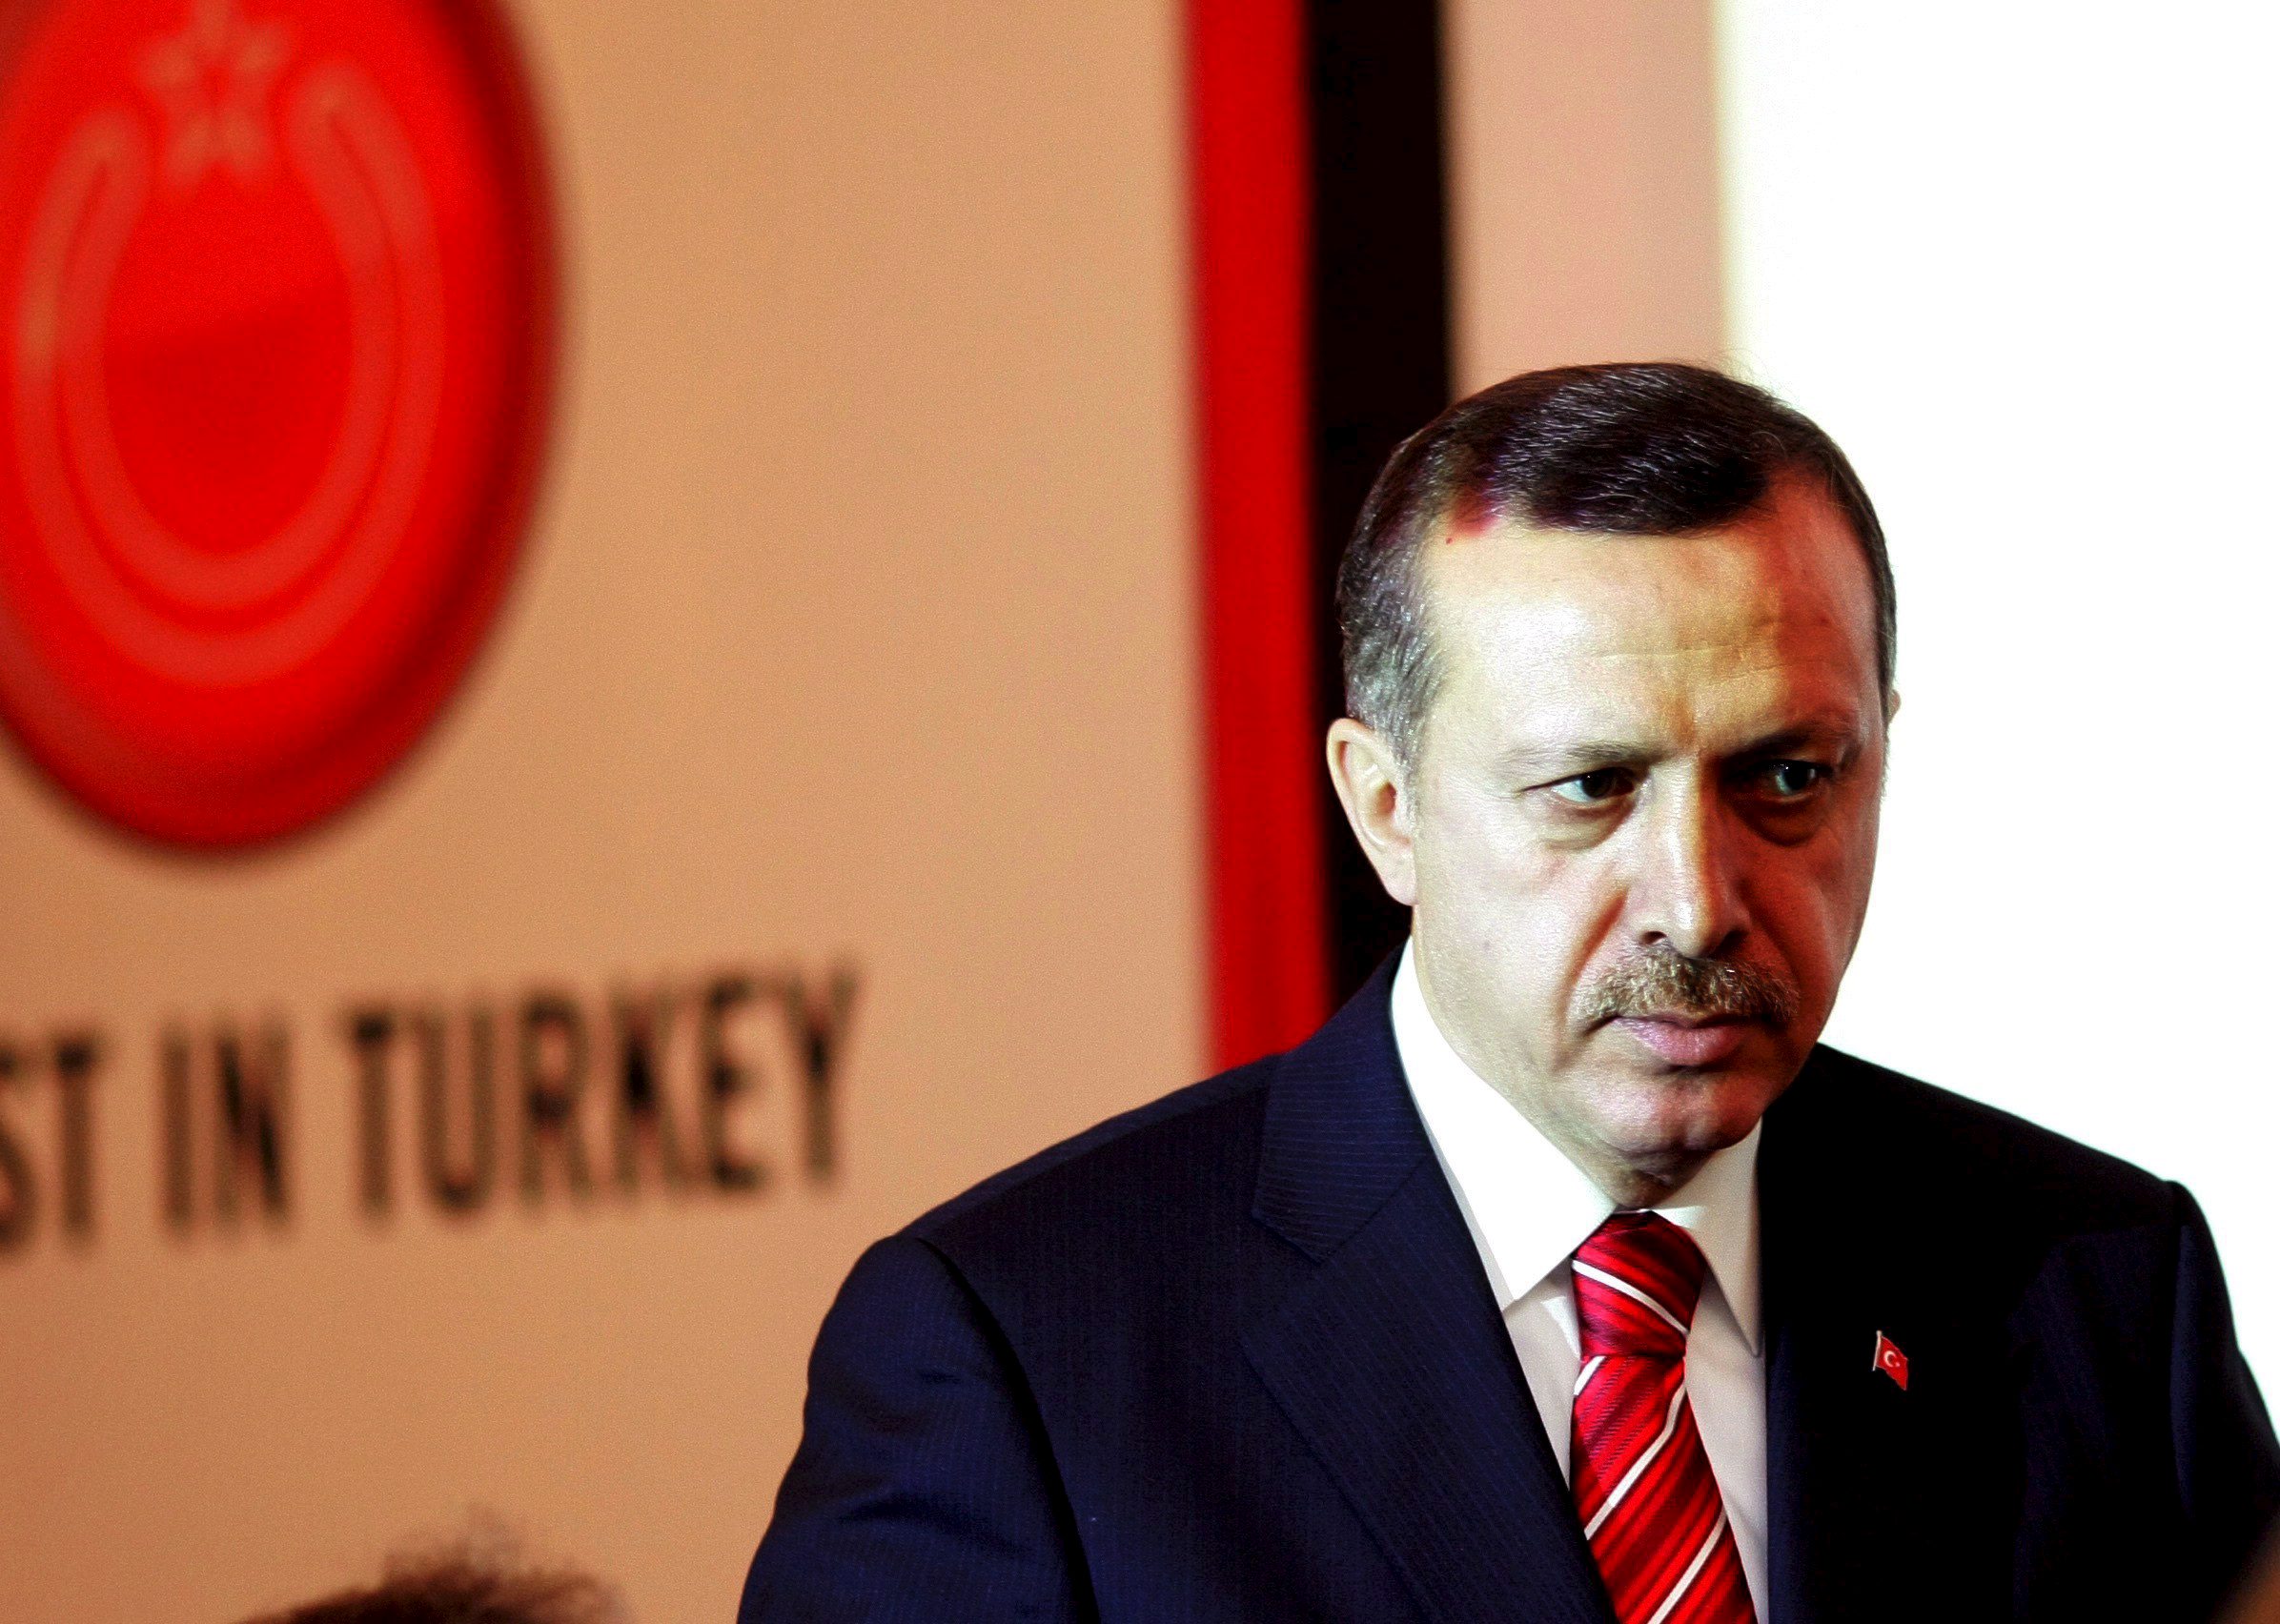 El Gobierno de Turquía incrementa las acciones en contra de quienes considere oposición a su gestión, argumentando que apoyan al terrorismo en ese país.